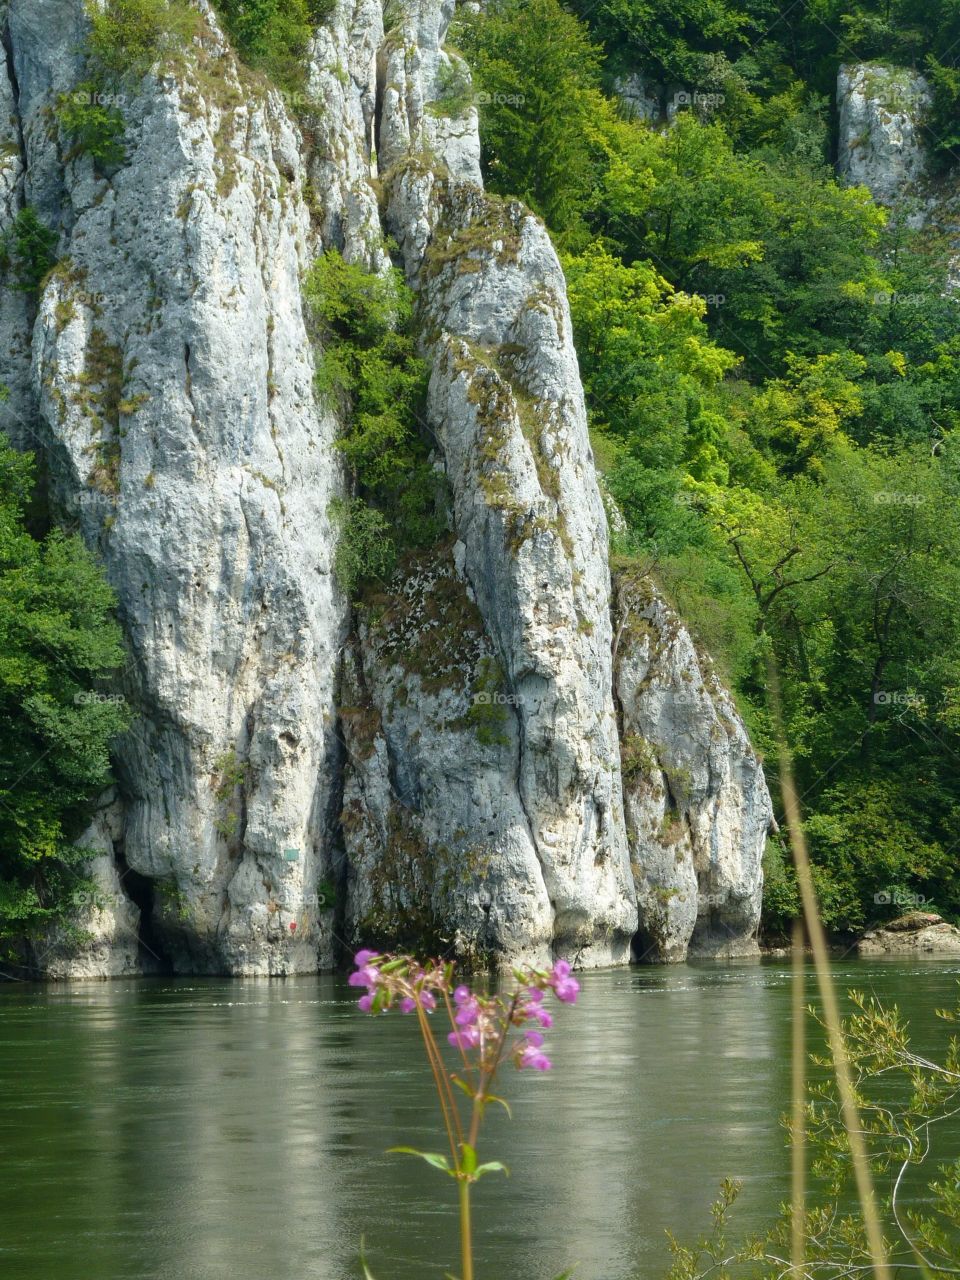 Danube River / Cliff